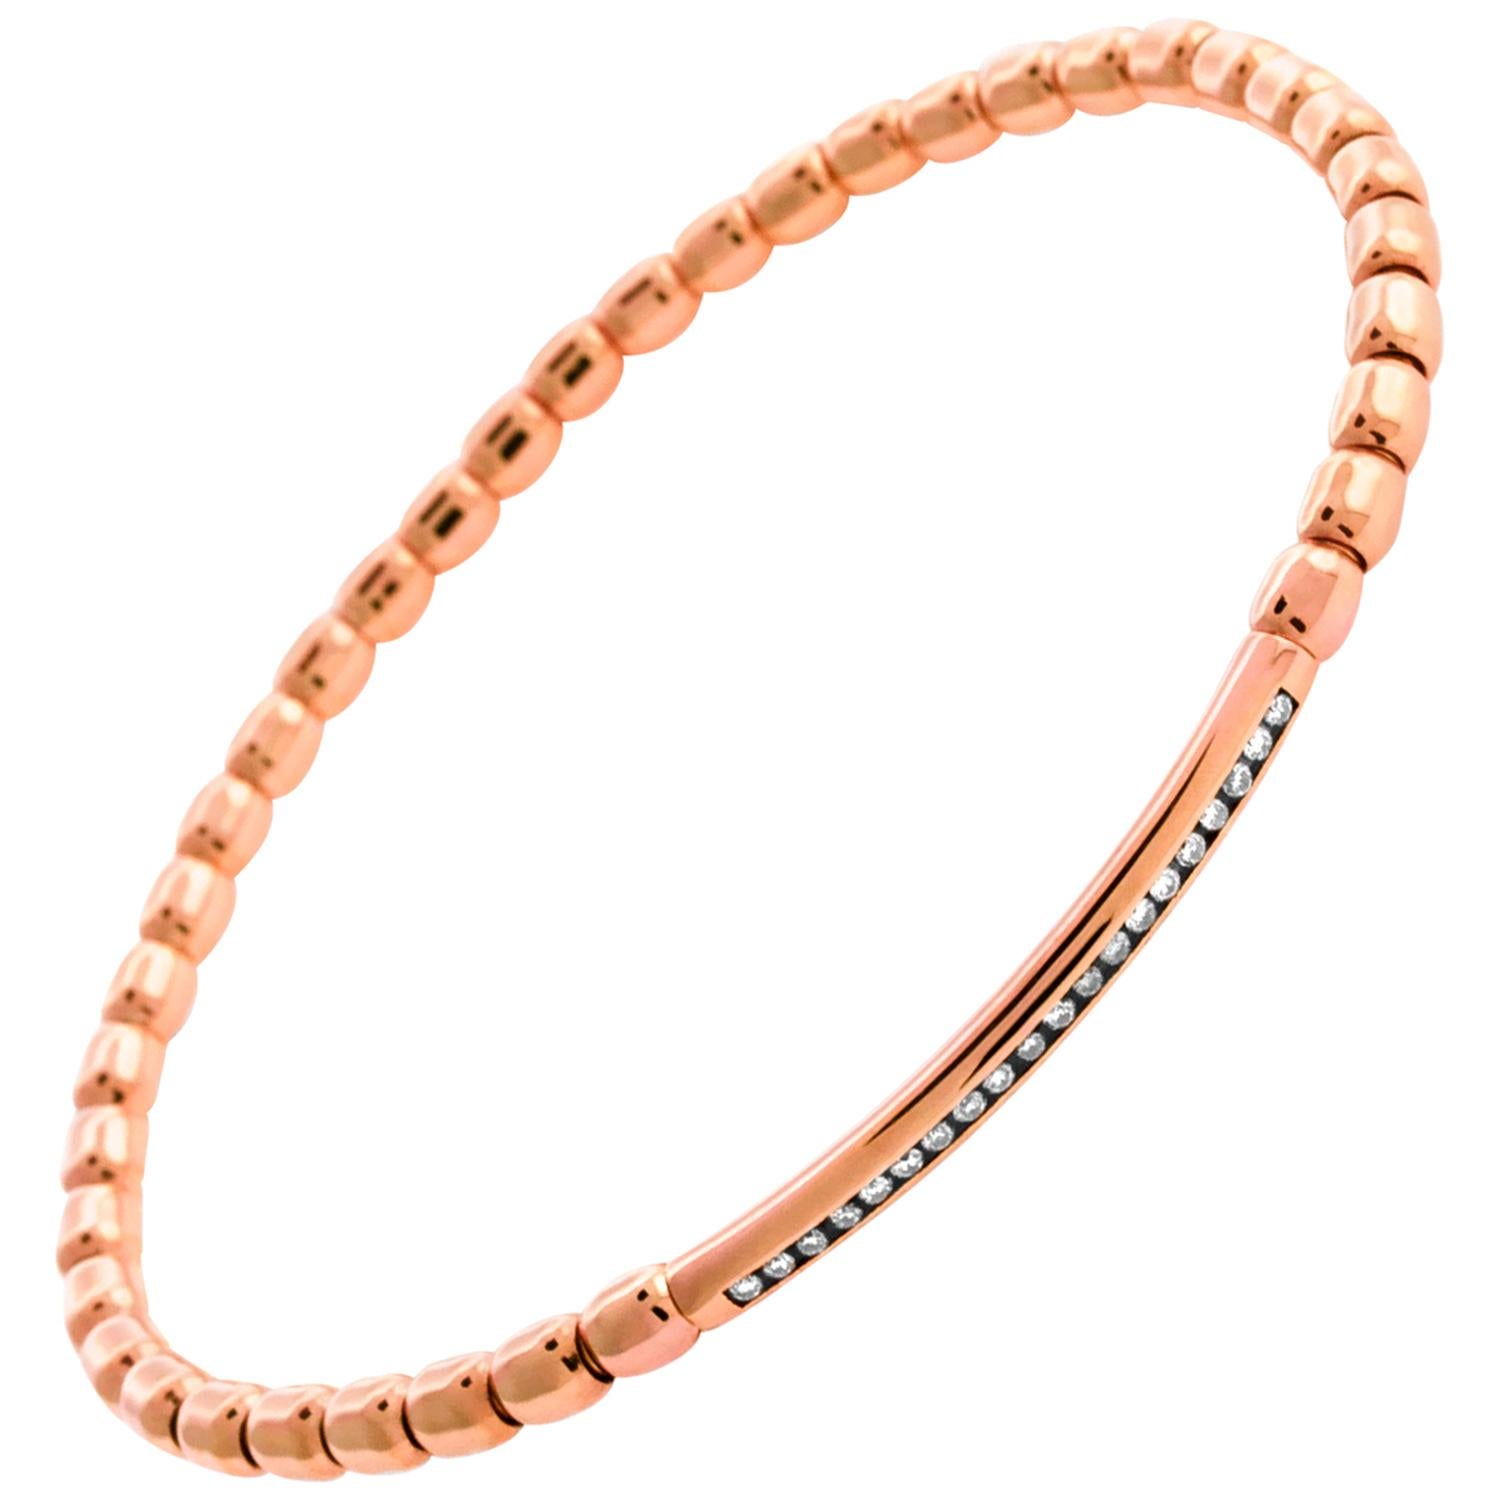 Bracelet de luxe en or rose 18 carats avec diamants blancs - Moyen